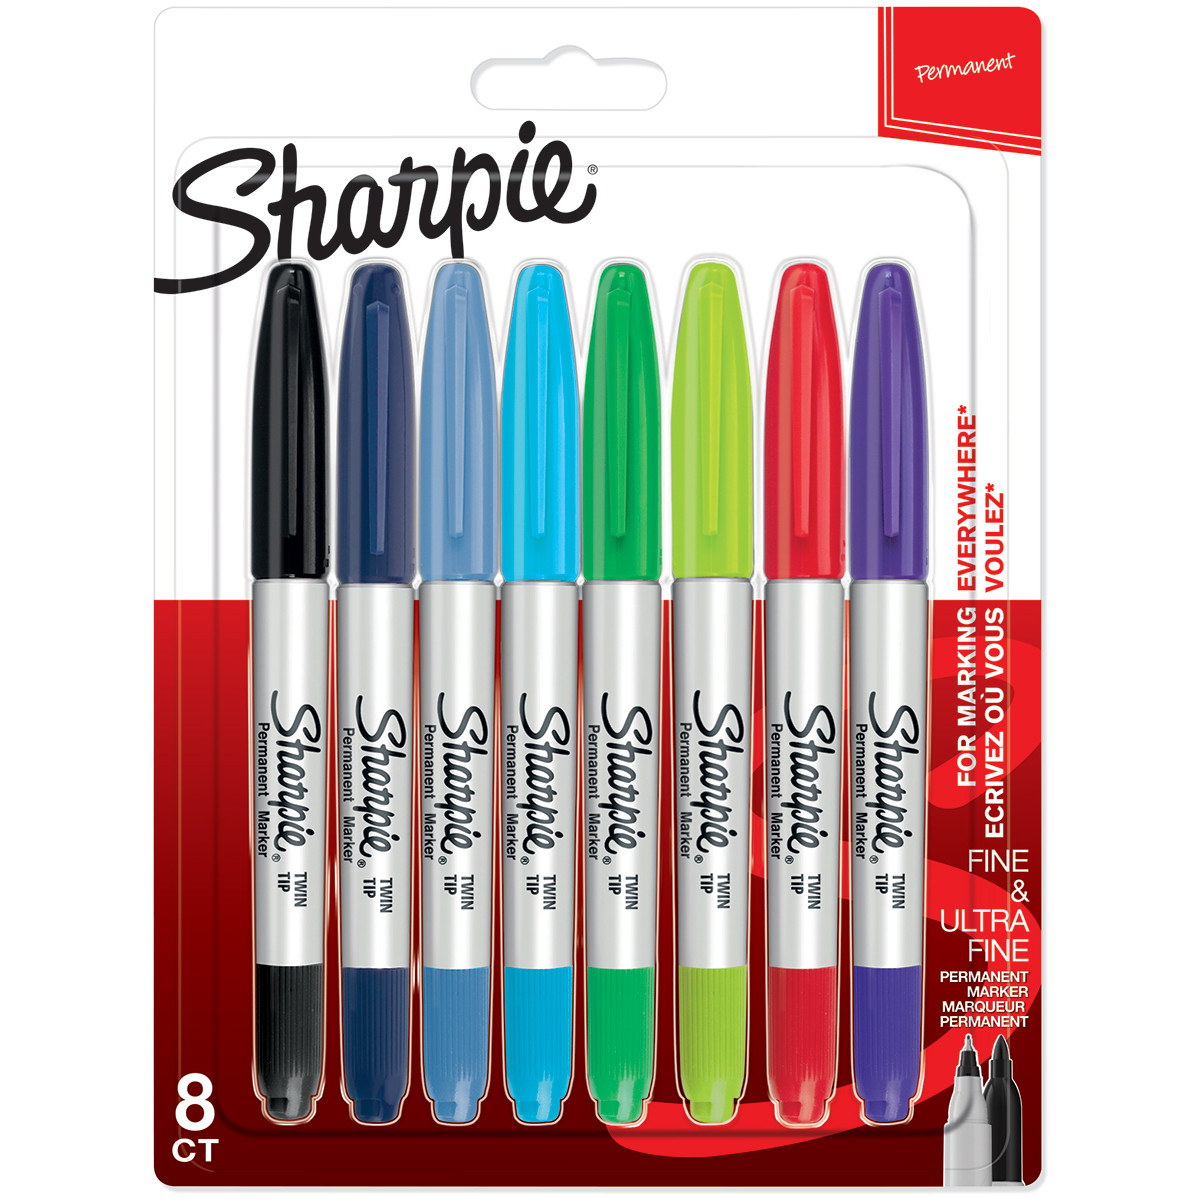 Sharpie Twin Tip Marker 8 Color Set: Black, Lime, Magenta, Navy, Orange,  Purple, Sky, Teal Blue - Kingpen